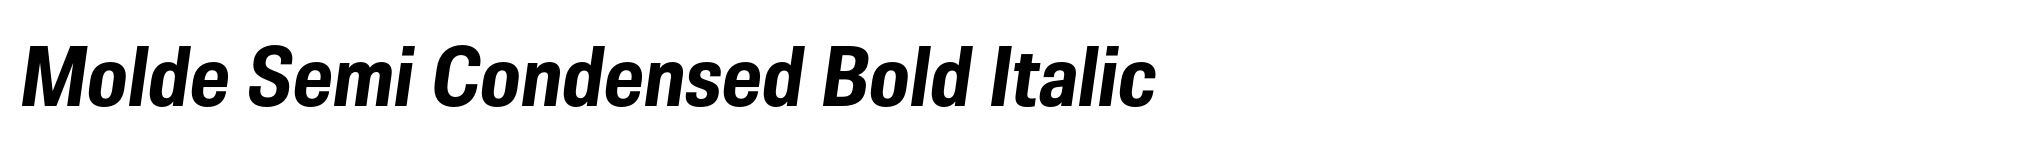 Molde Semi Condensed Bold Italic image